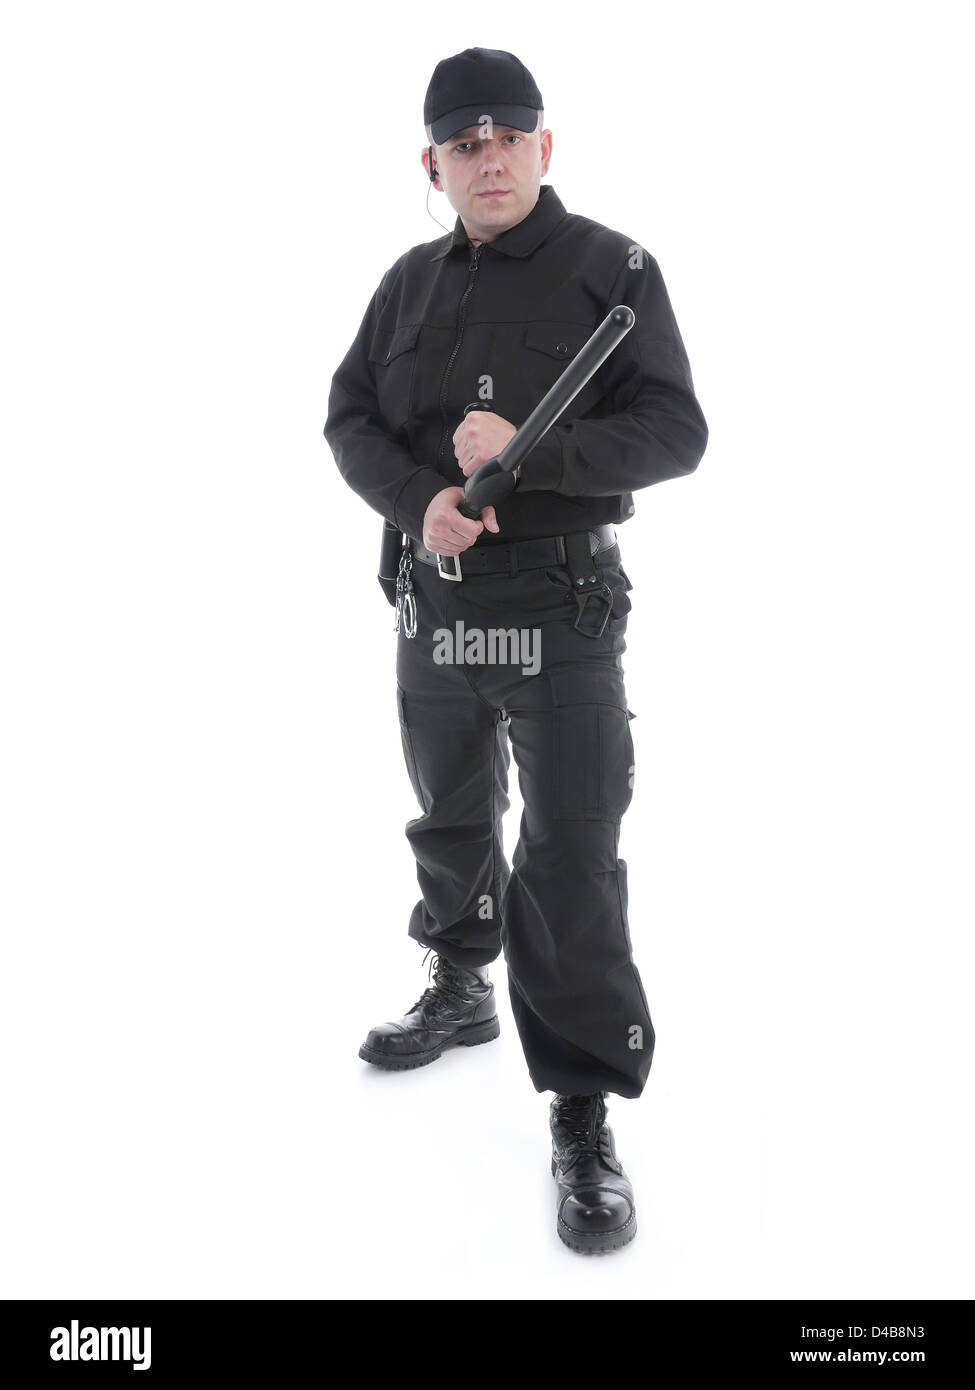 Polizei Mann tragen schwarzen Uniform hielt fest Polizei Club in beiden Händen voller Tatendrang, geschossen auf weiß Stockfoto